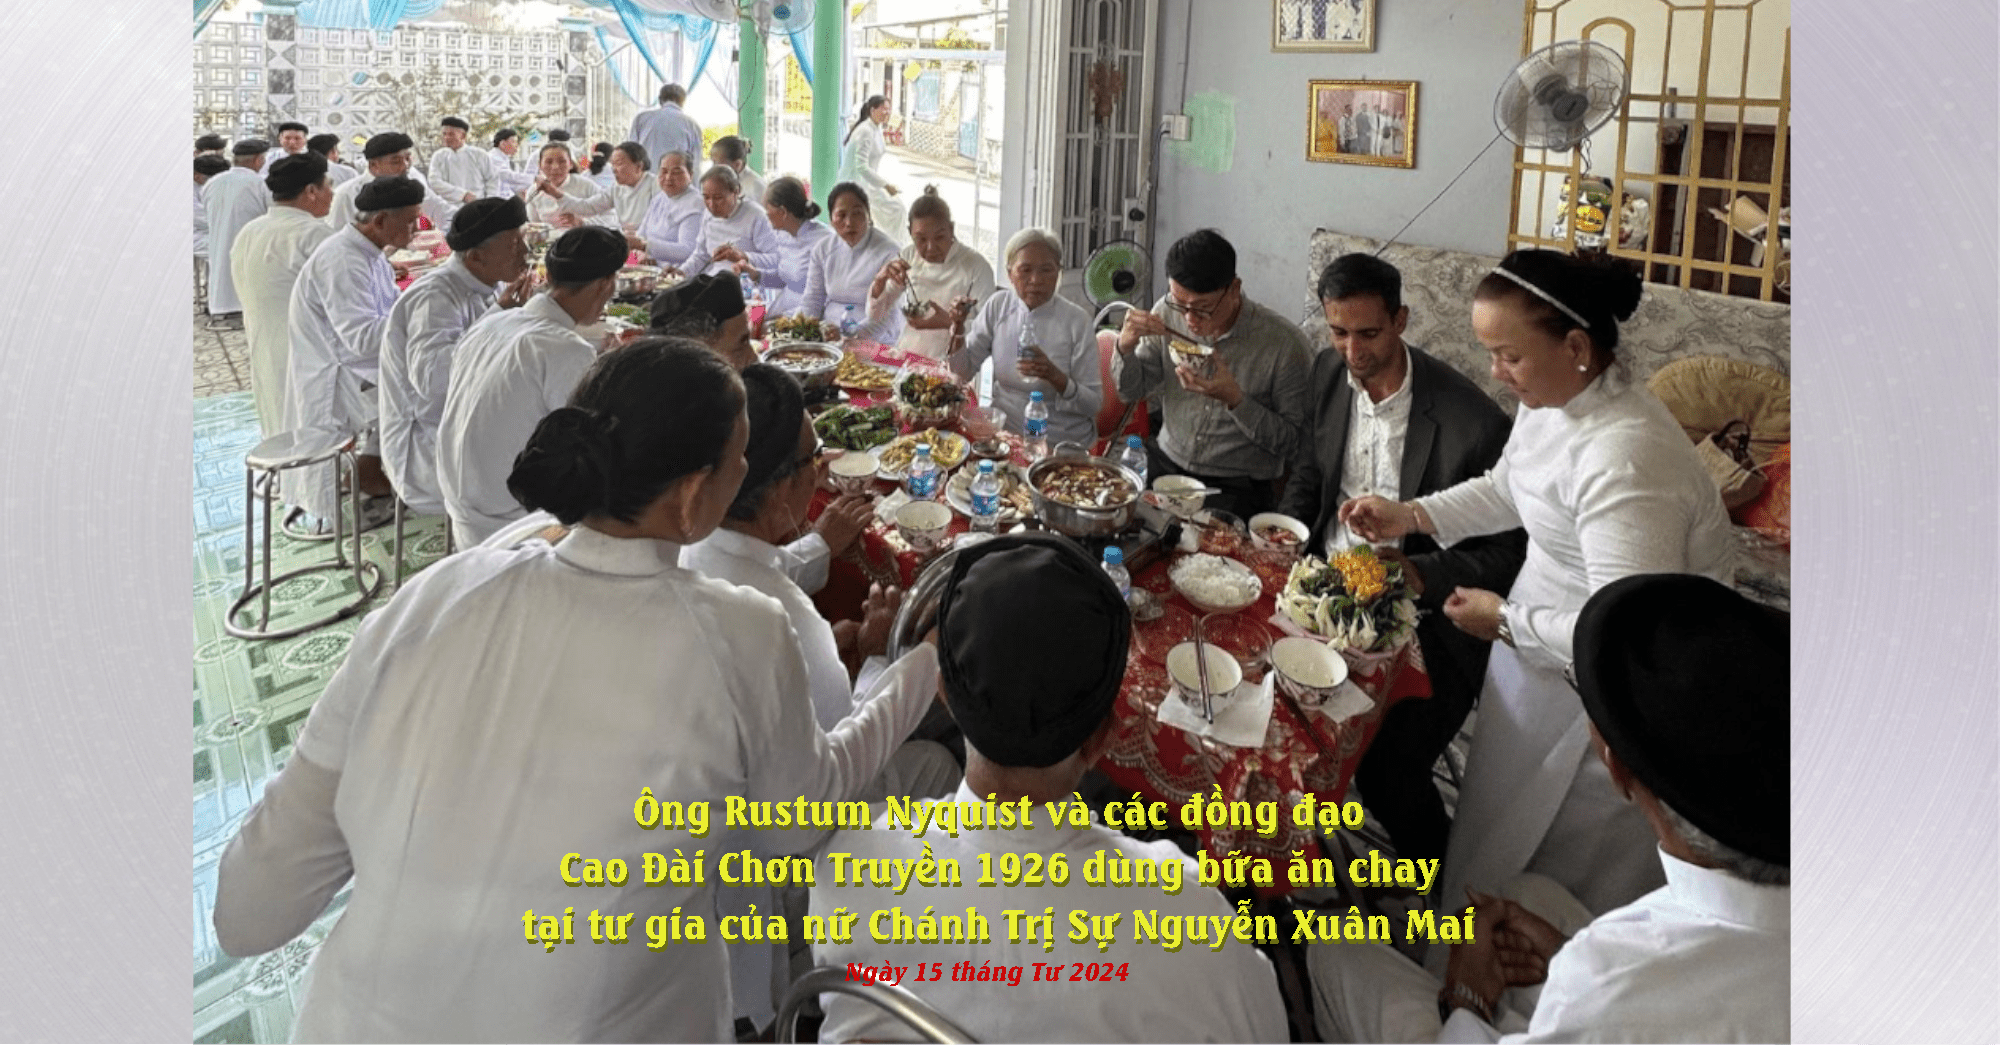 Tùy Viên Chính Trị, Lãnh Sự Quán Hoa Kỳ tại Sài Gòn thị sát tình trạng tự do tôn giáo ở các tỉnh miền Tây Nam Bộ